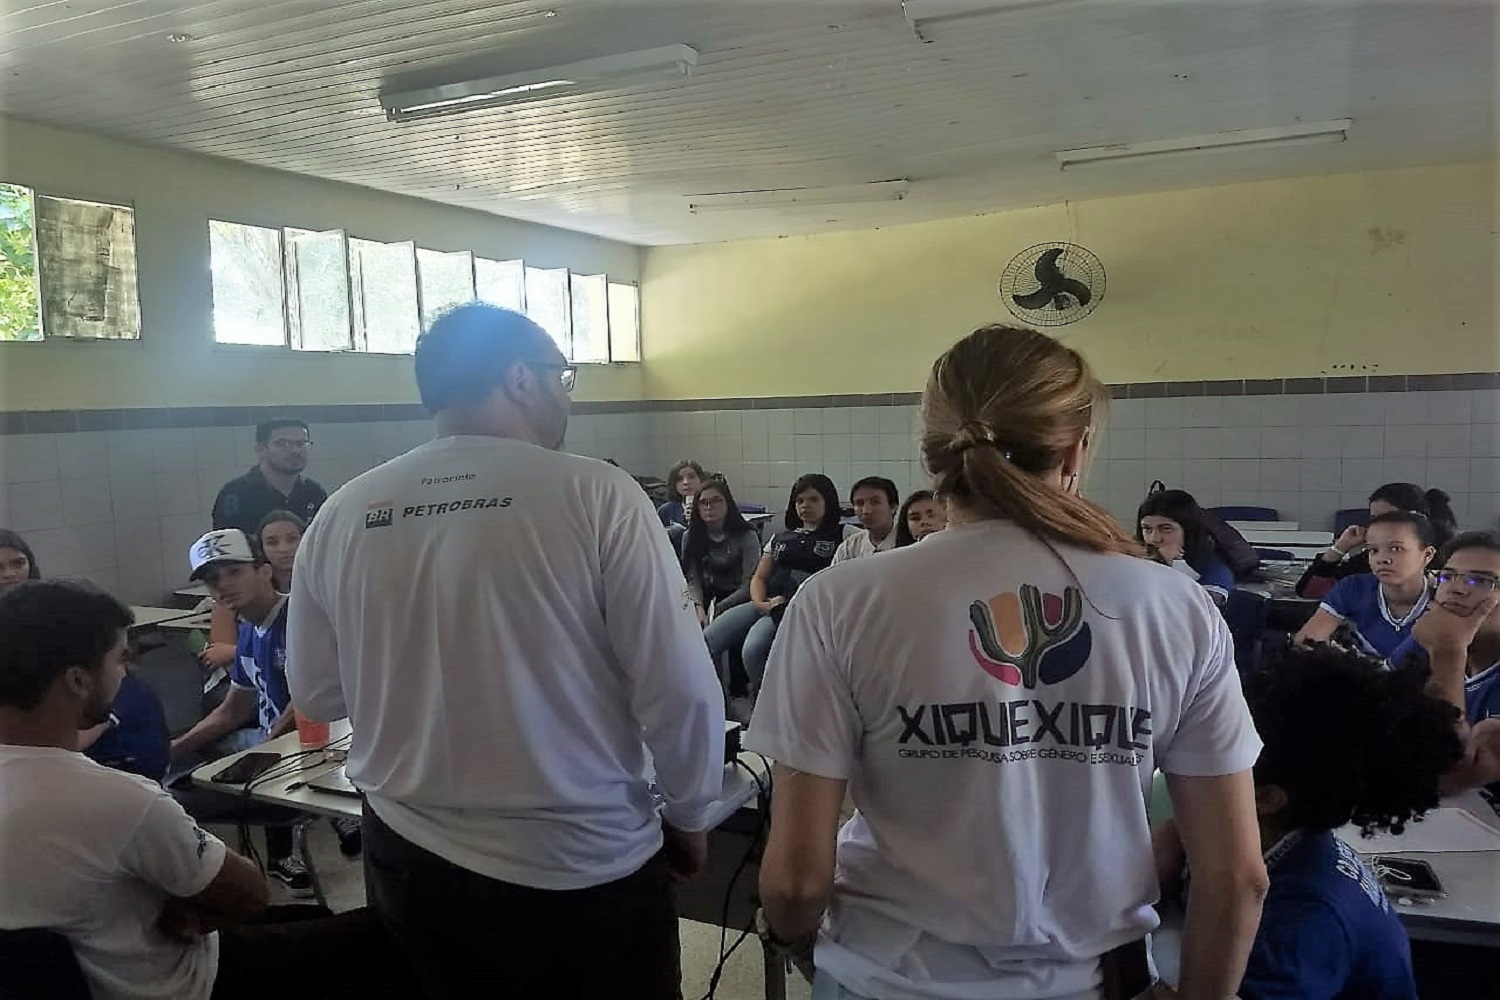 Representantes apresentaram os projetos “XiqueXique” e “Opará”, desenvolvidos na região. (fotos: divulgação)